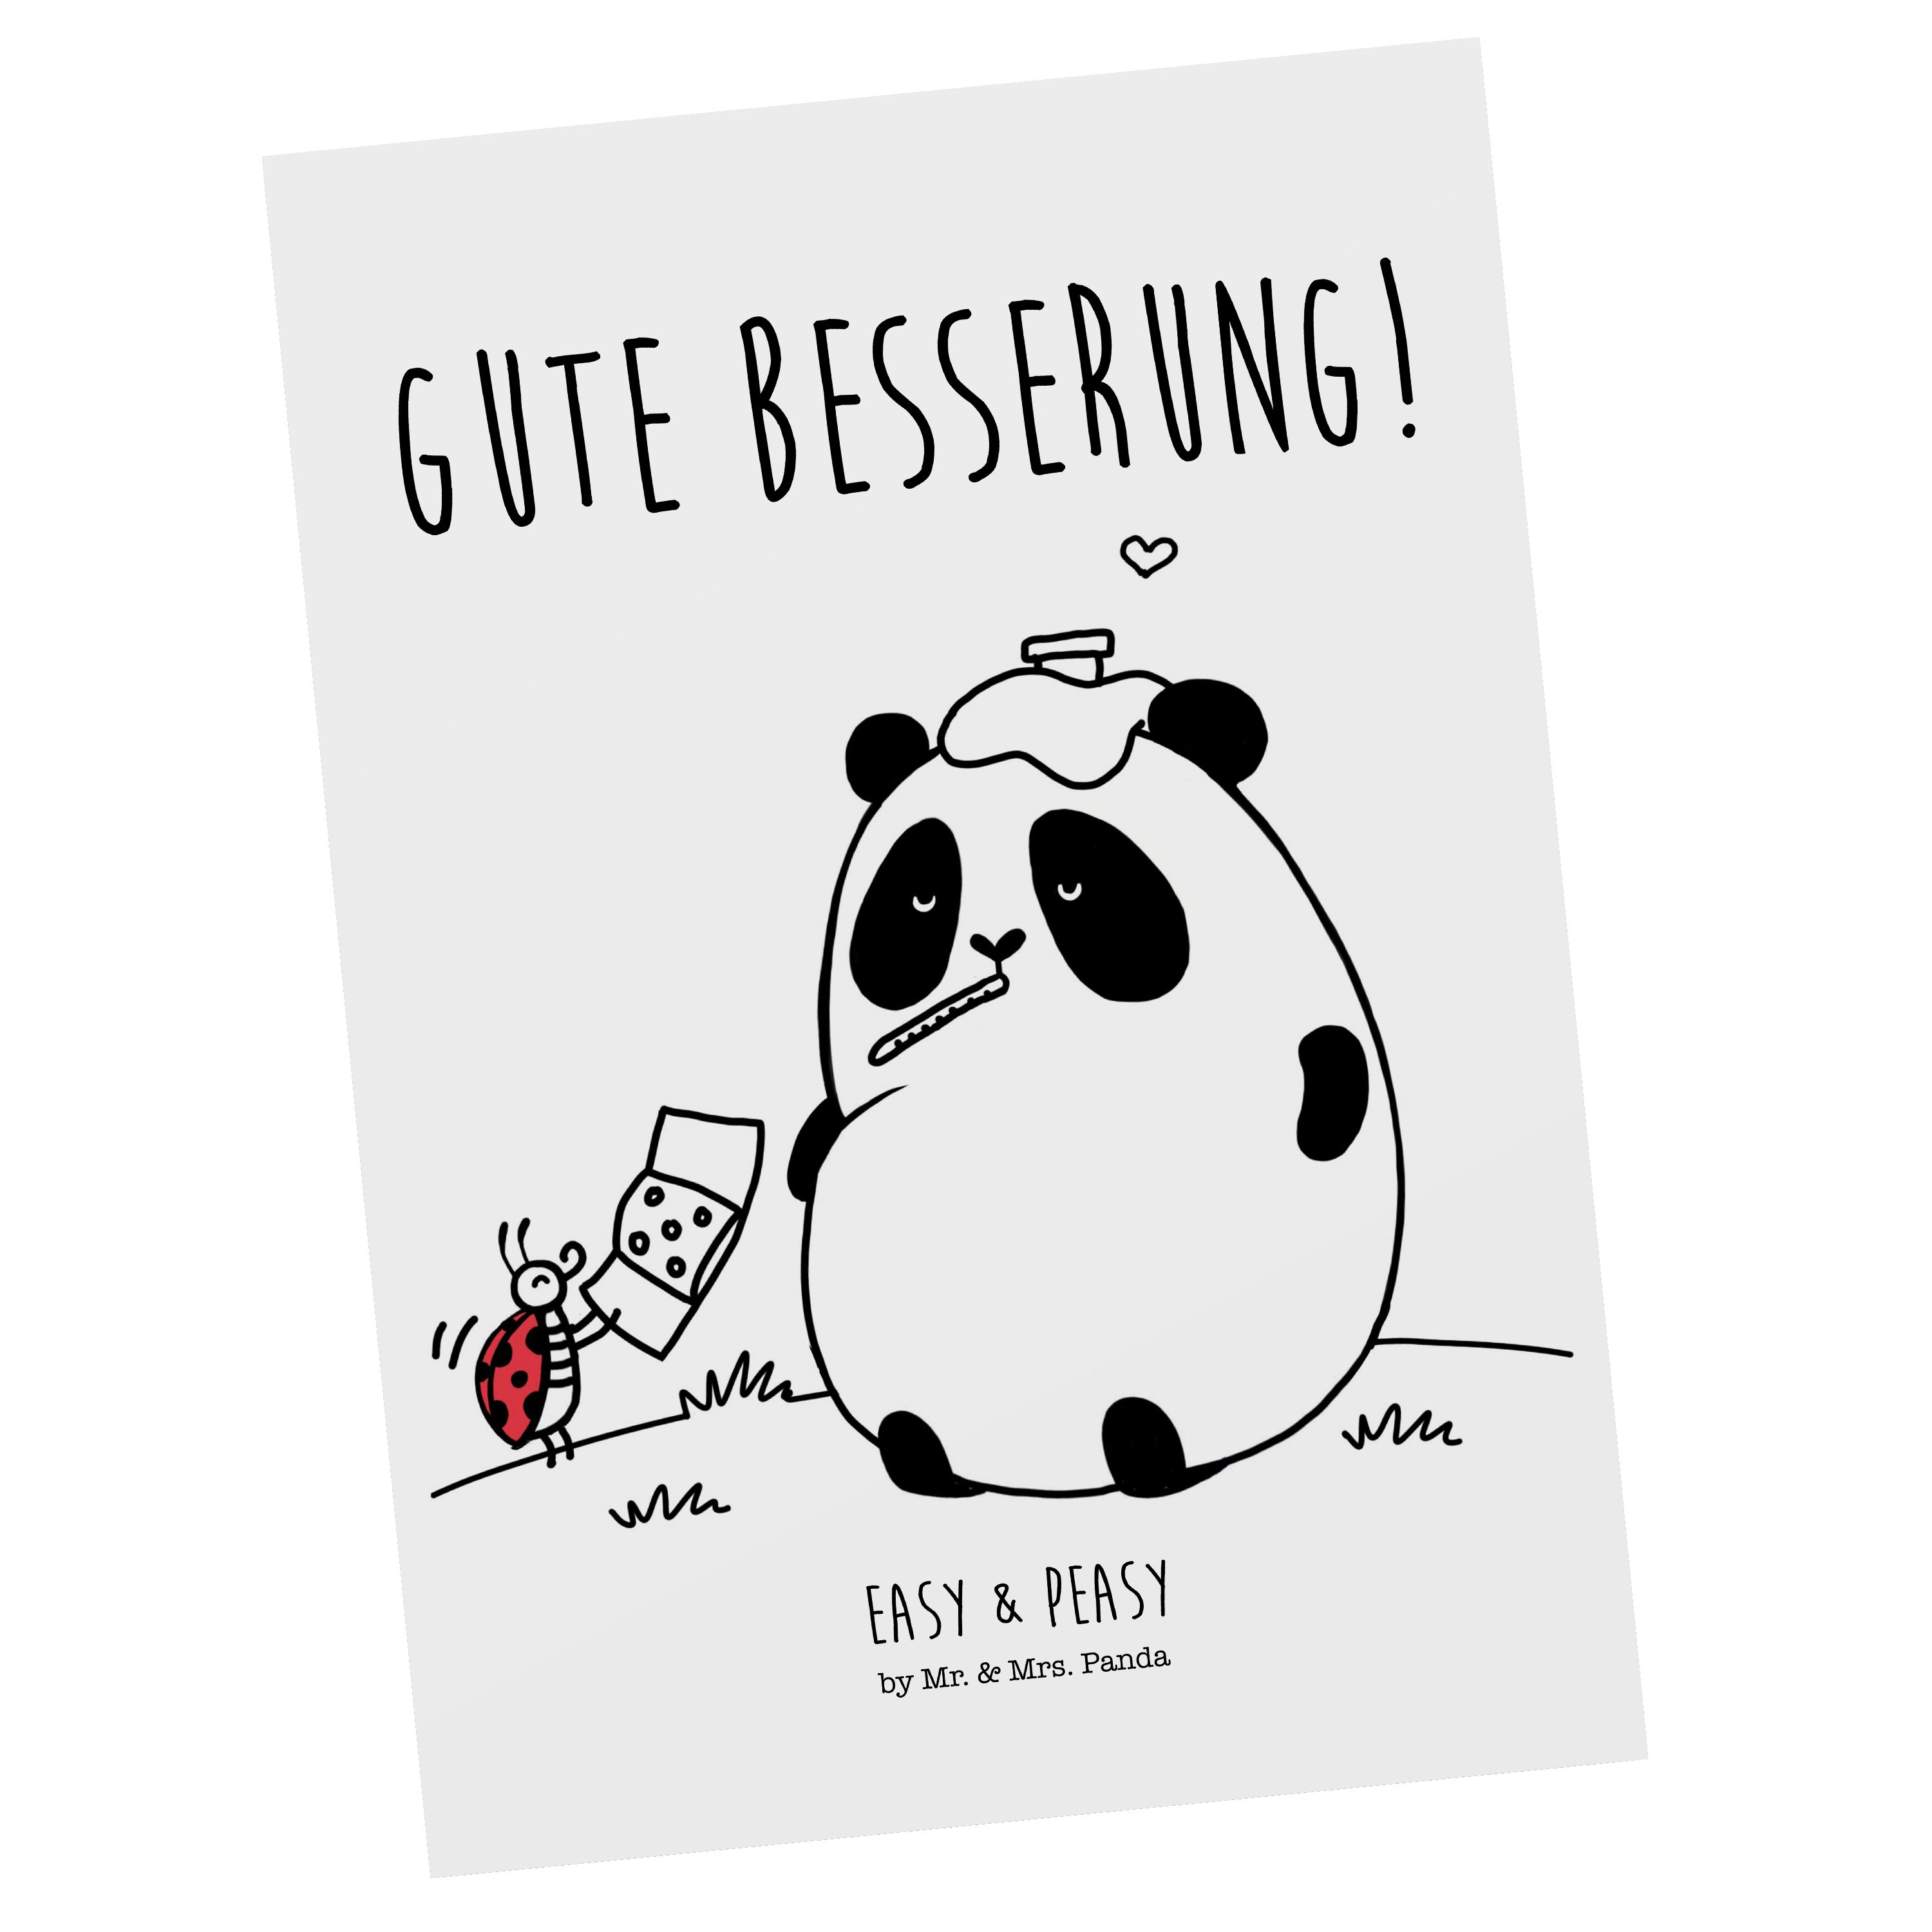 Mr. & Mrs. Panda Postkarte Easy & Peasy Gute Besserung - Weiß - Geschenk, Einladung, Grußkarte